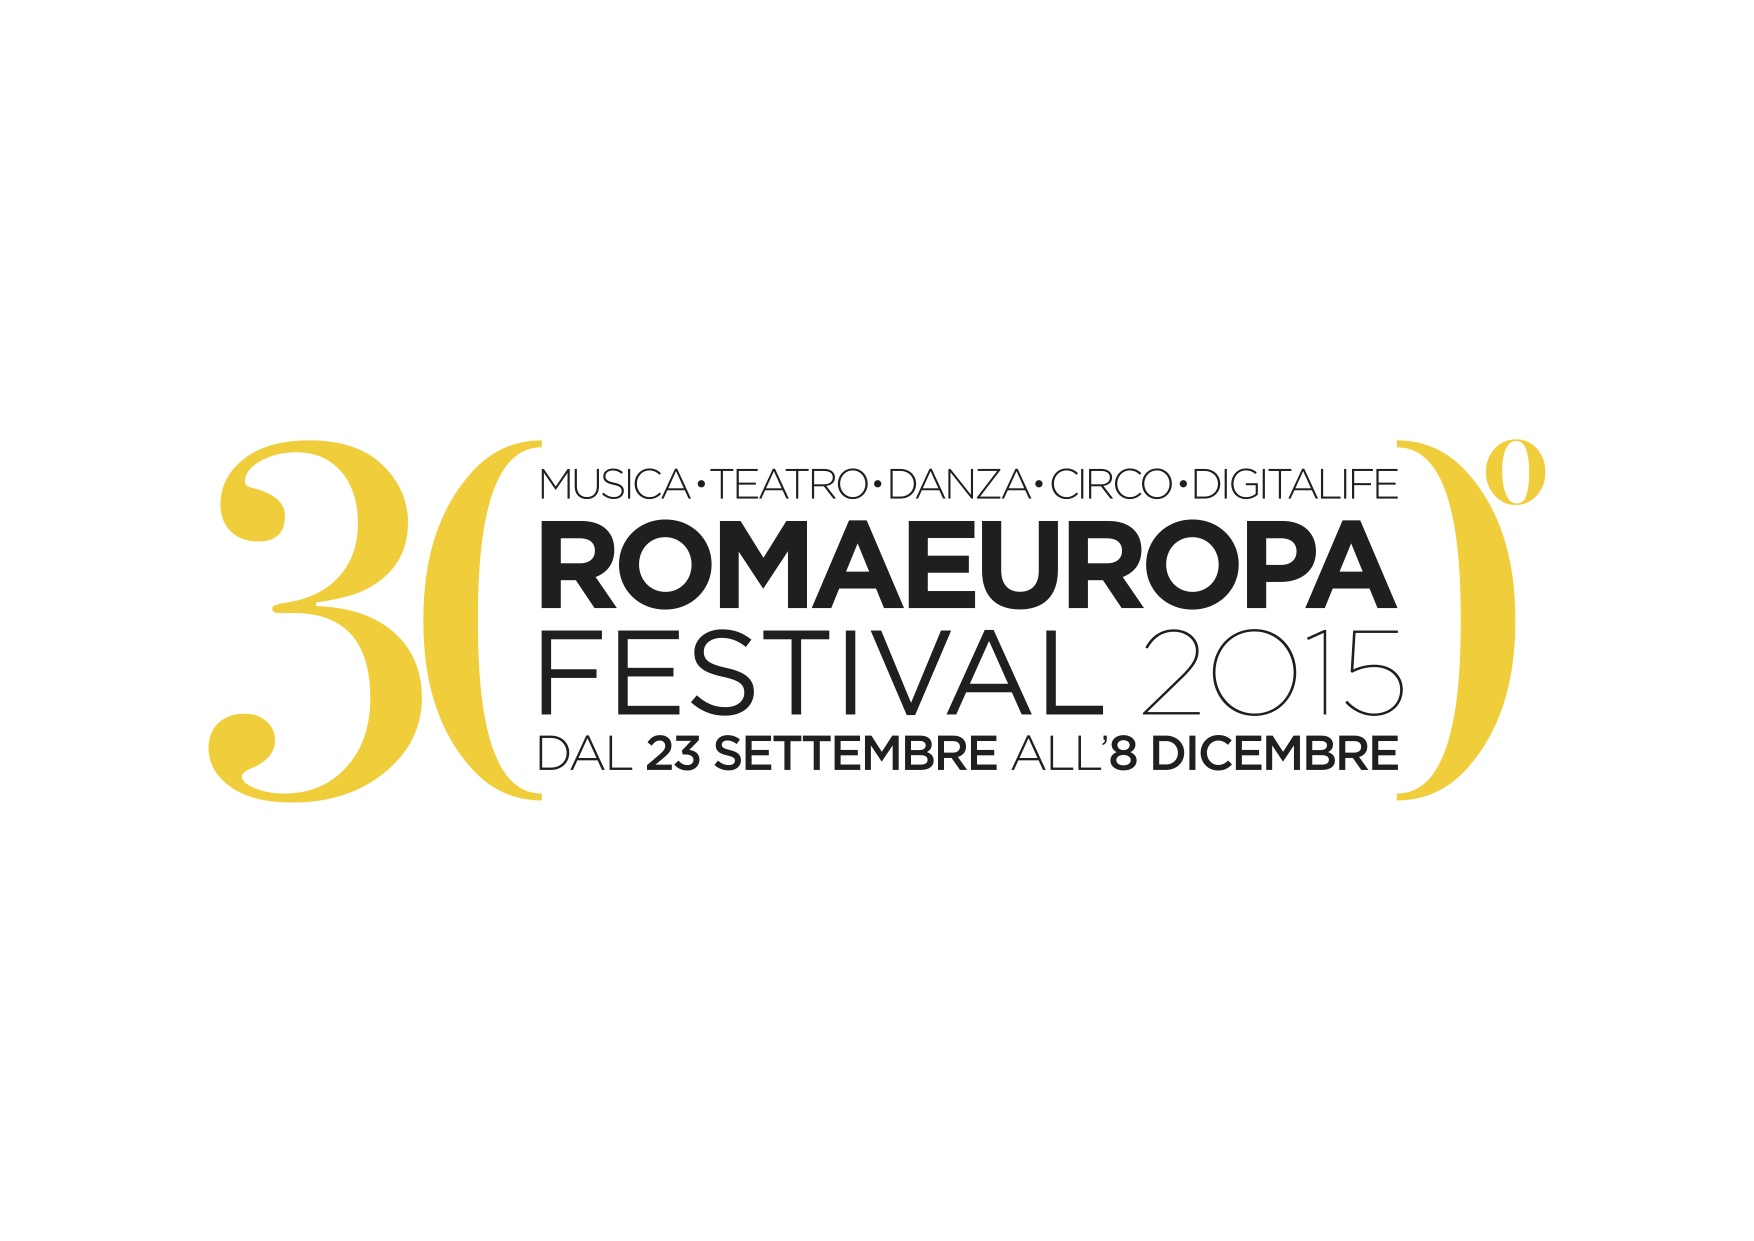 Romaeuropa Festival promozione allievi Accademia Nazionale d'Arte